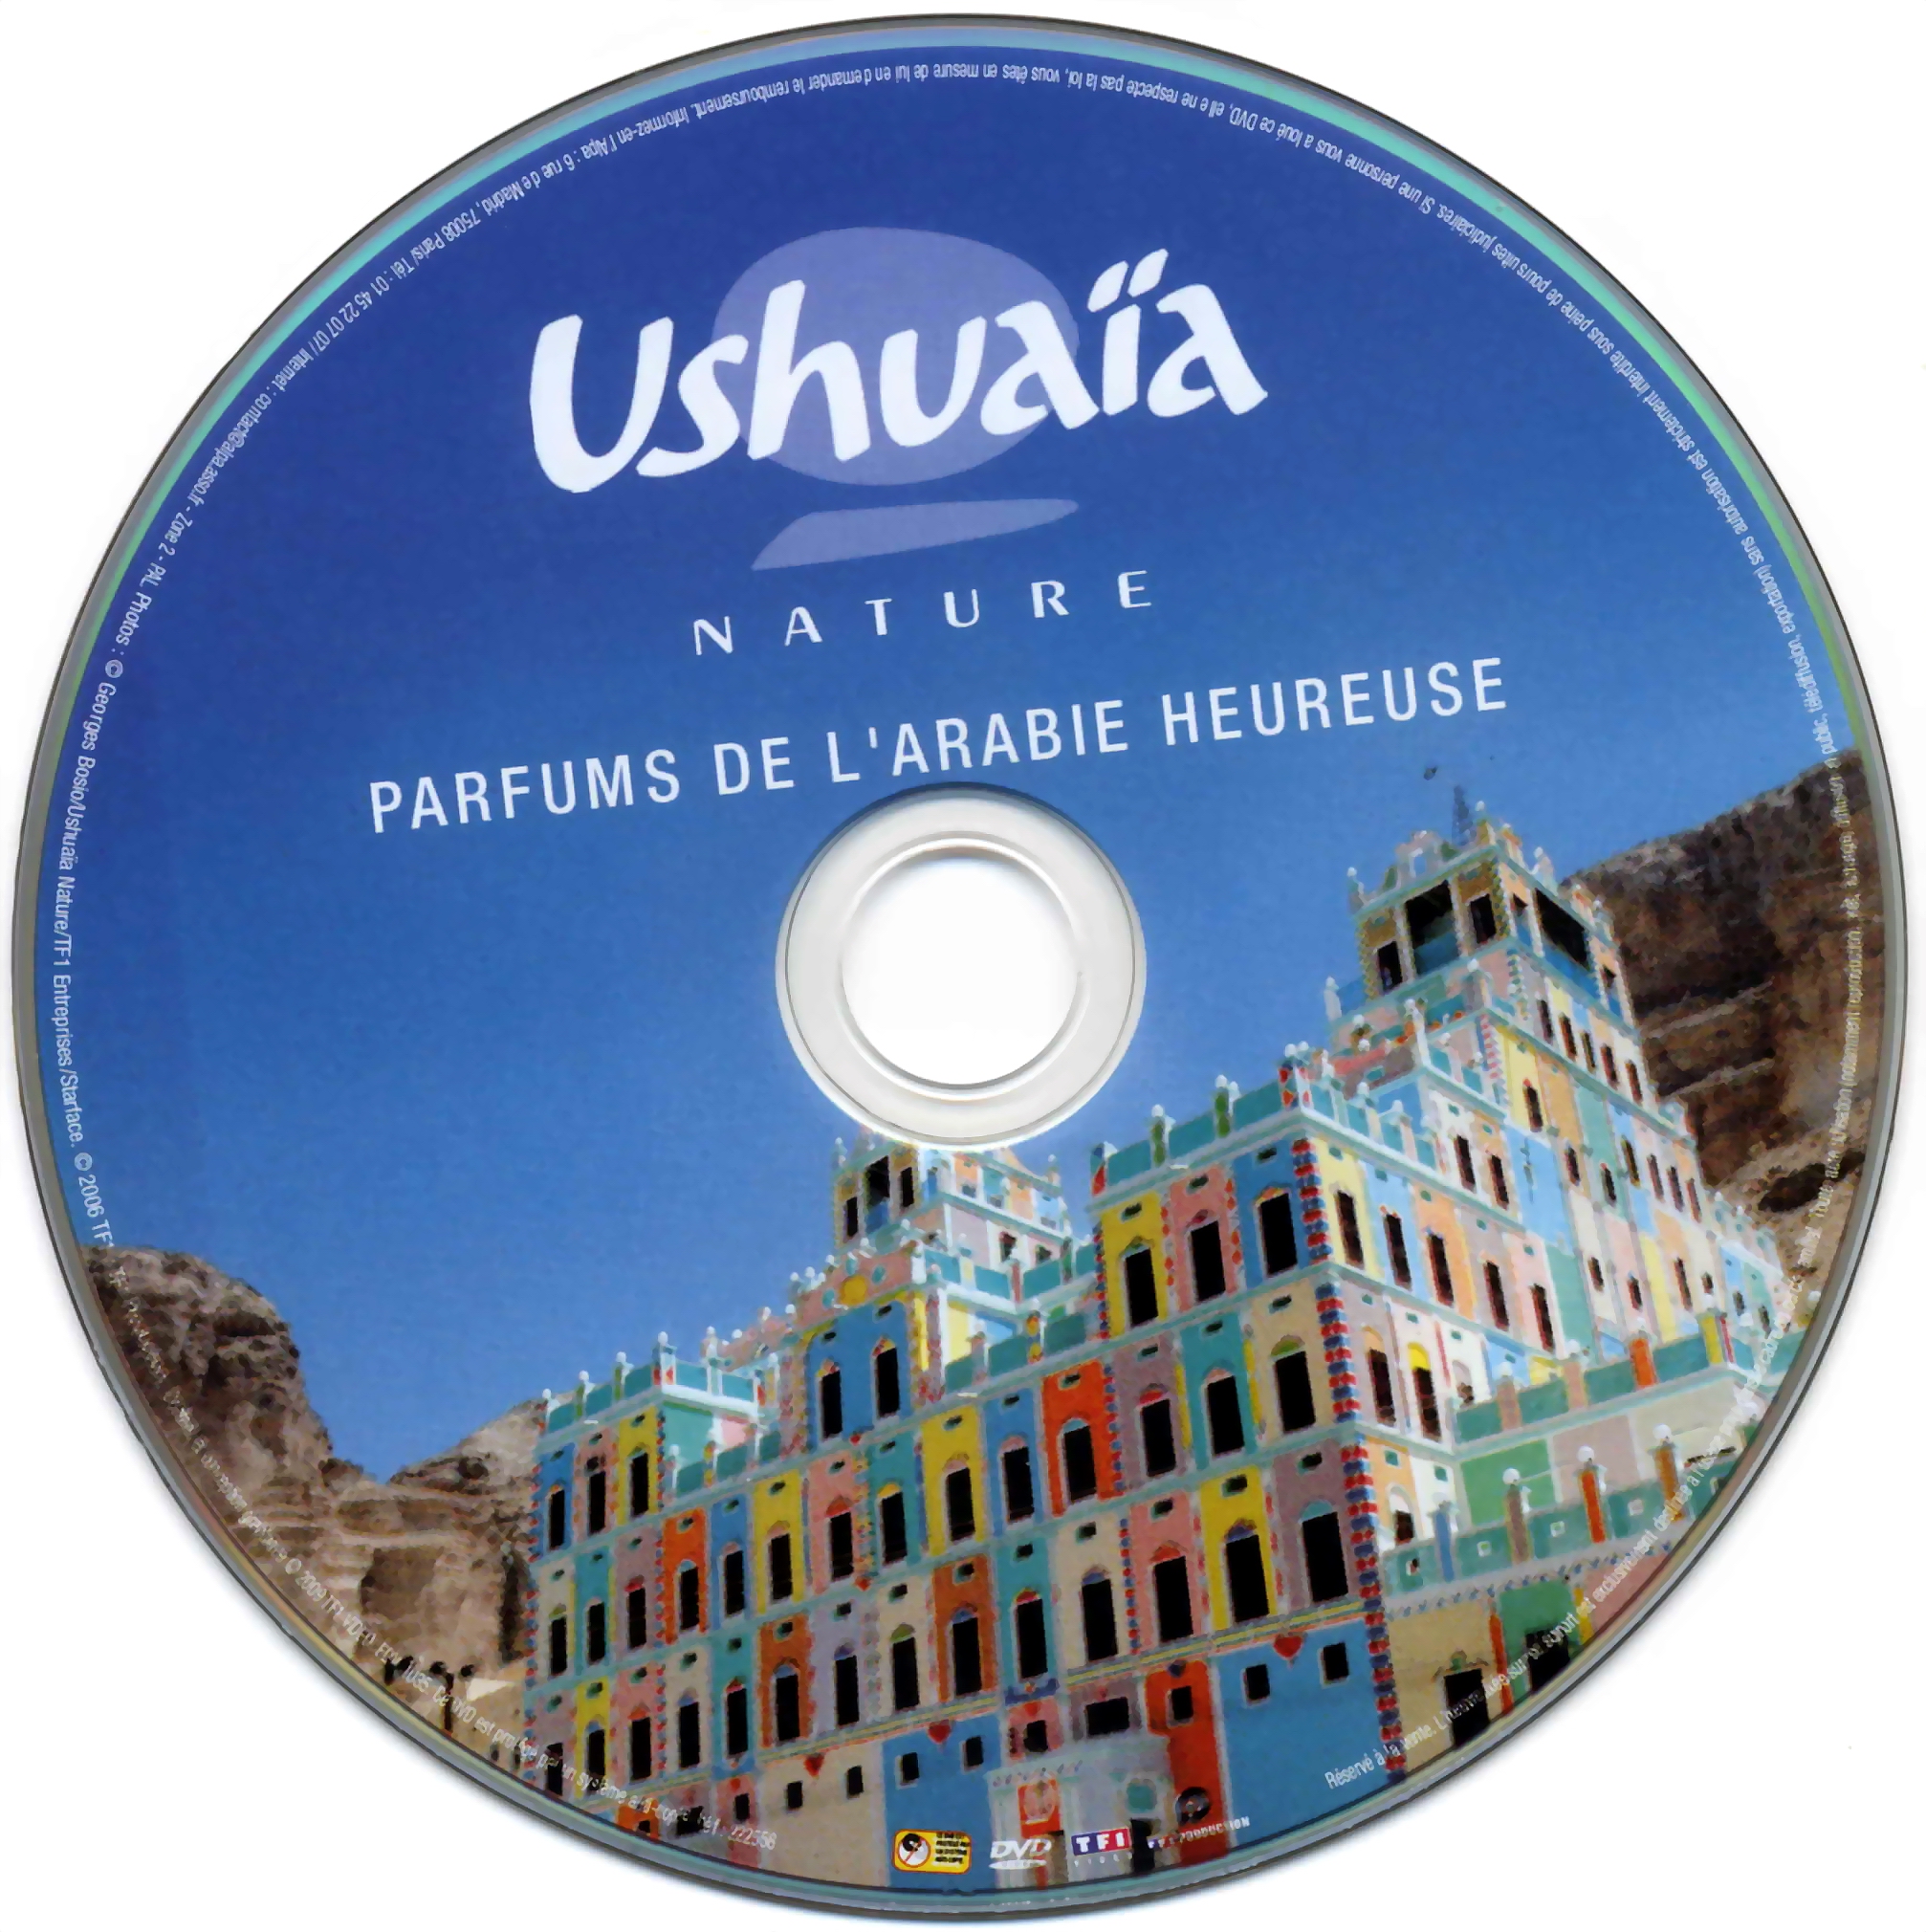 Ushuaia Nature - Parfums de l